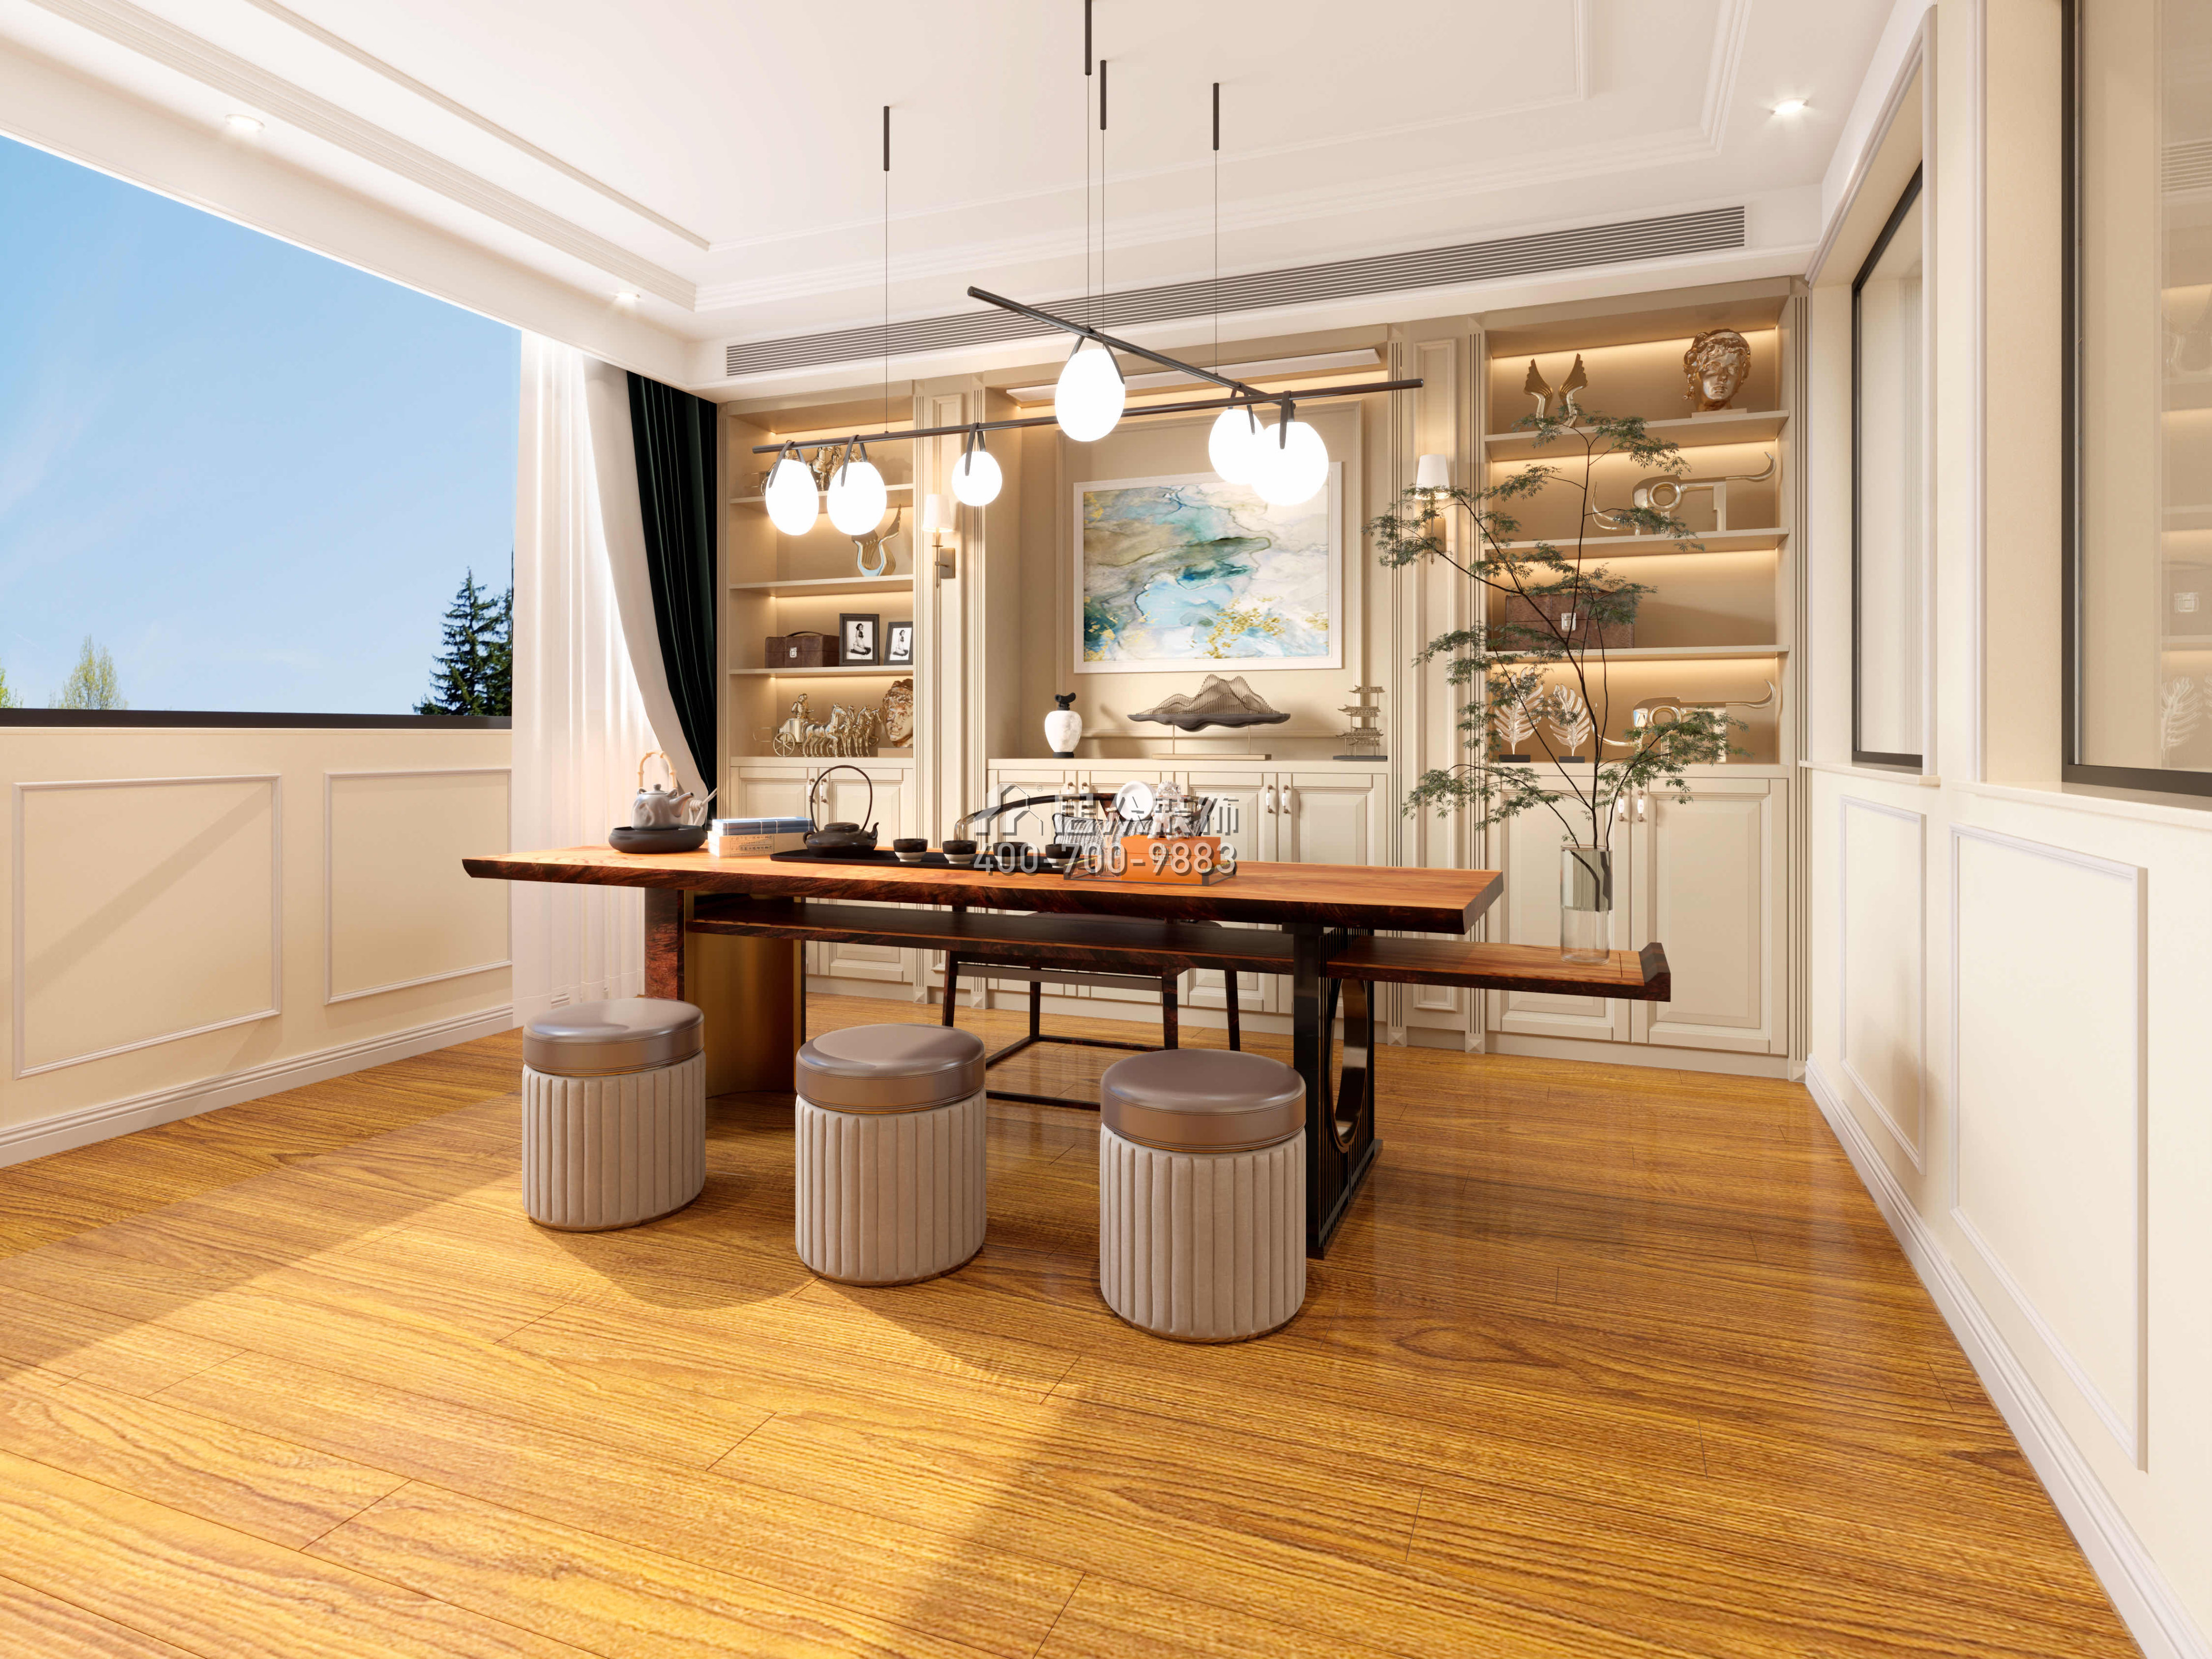 仁山智水780平方米欧式风格别墅户型茶室装修效果图